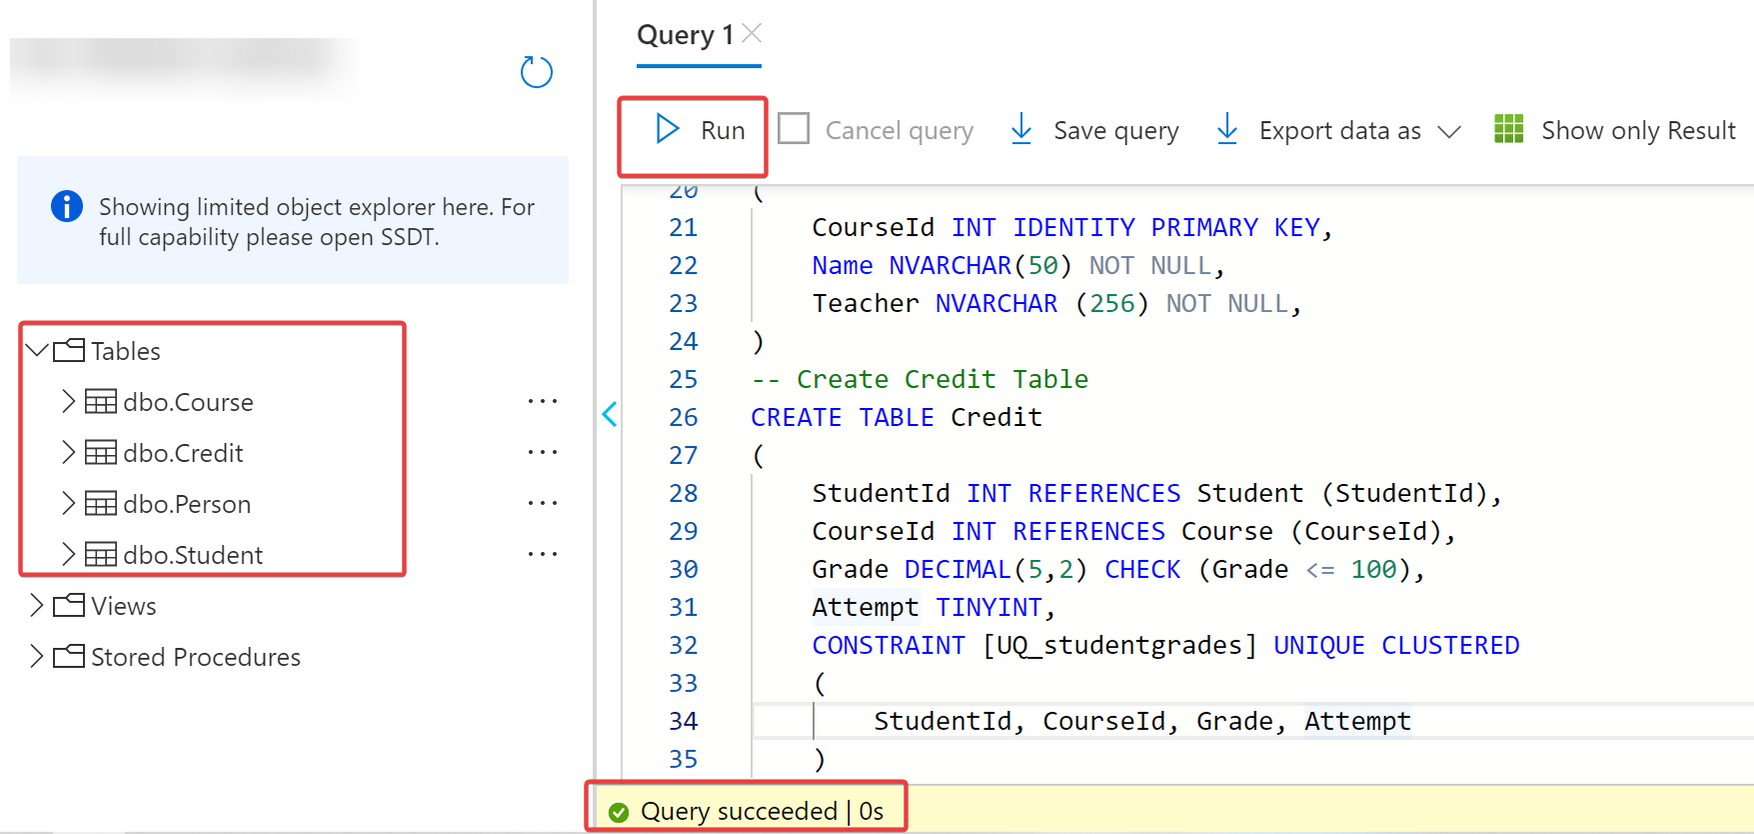 Confirming SQL query 